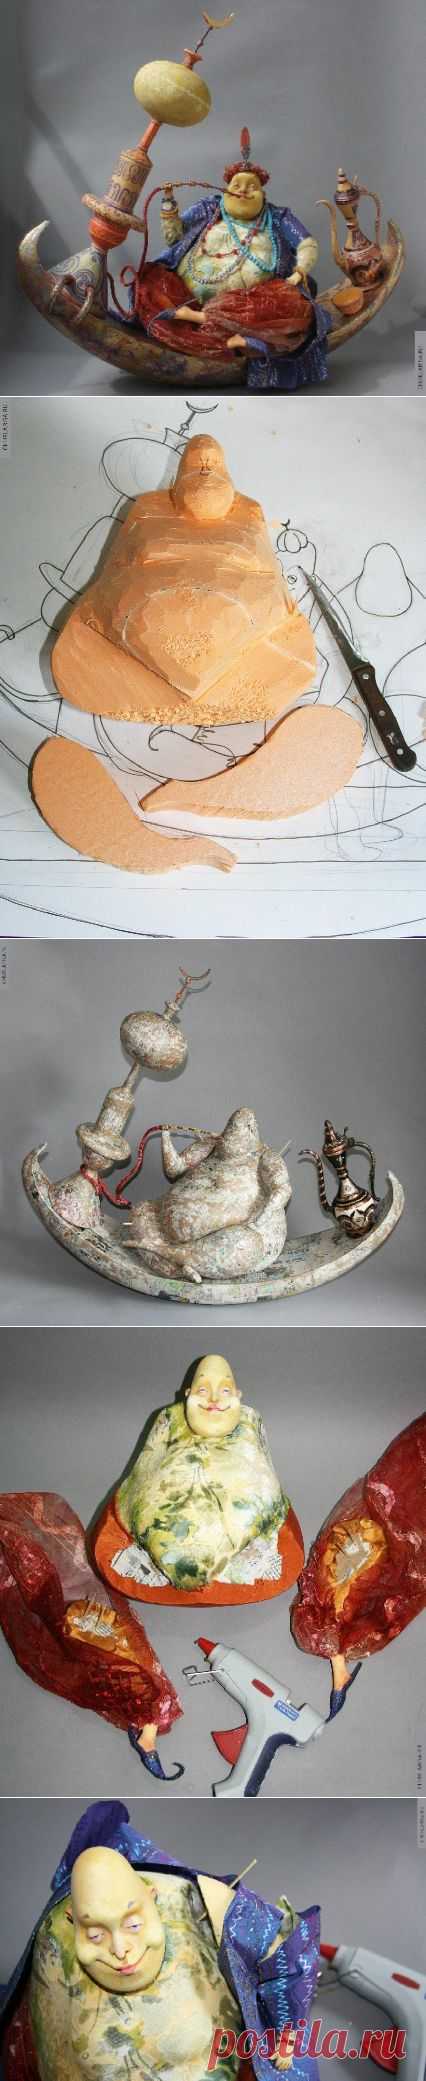 Авторские и портретные куклы Ларисы Чуркиной - скульптура из многослойного папье-маше